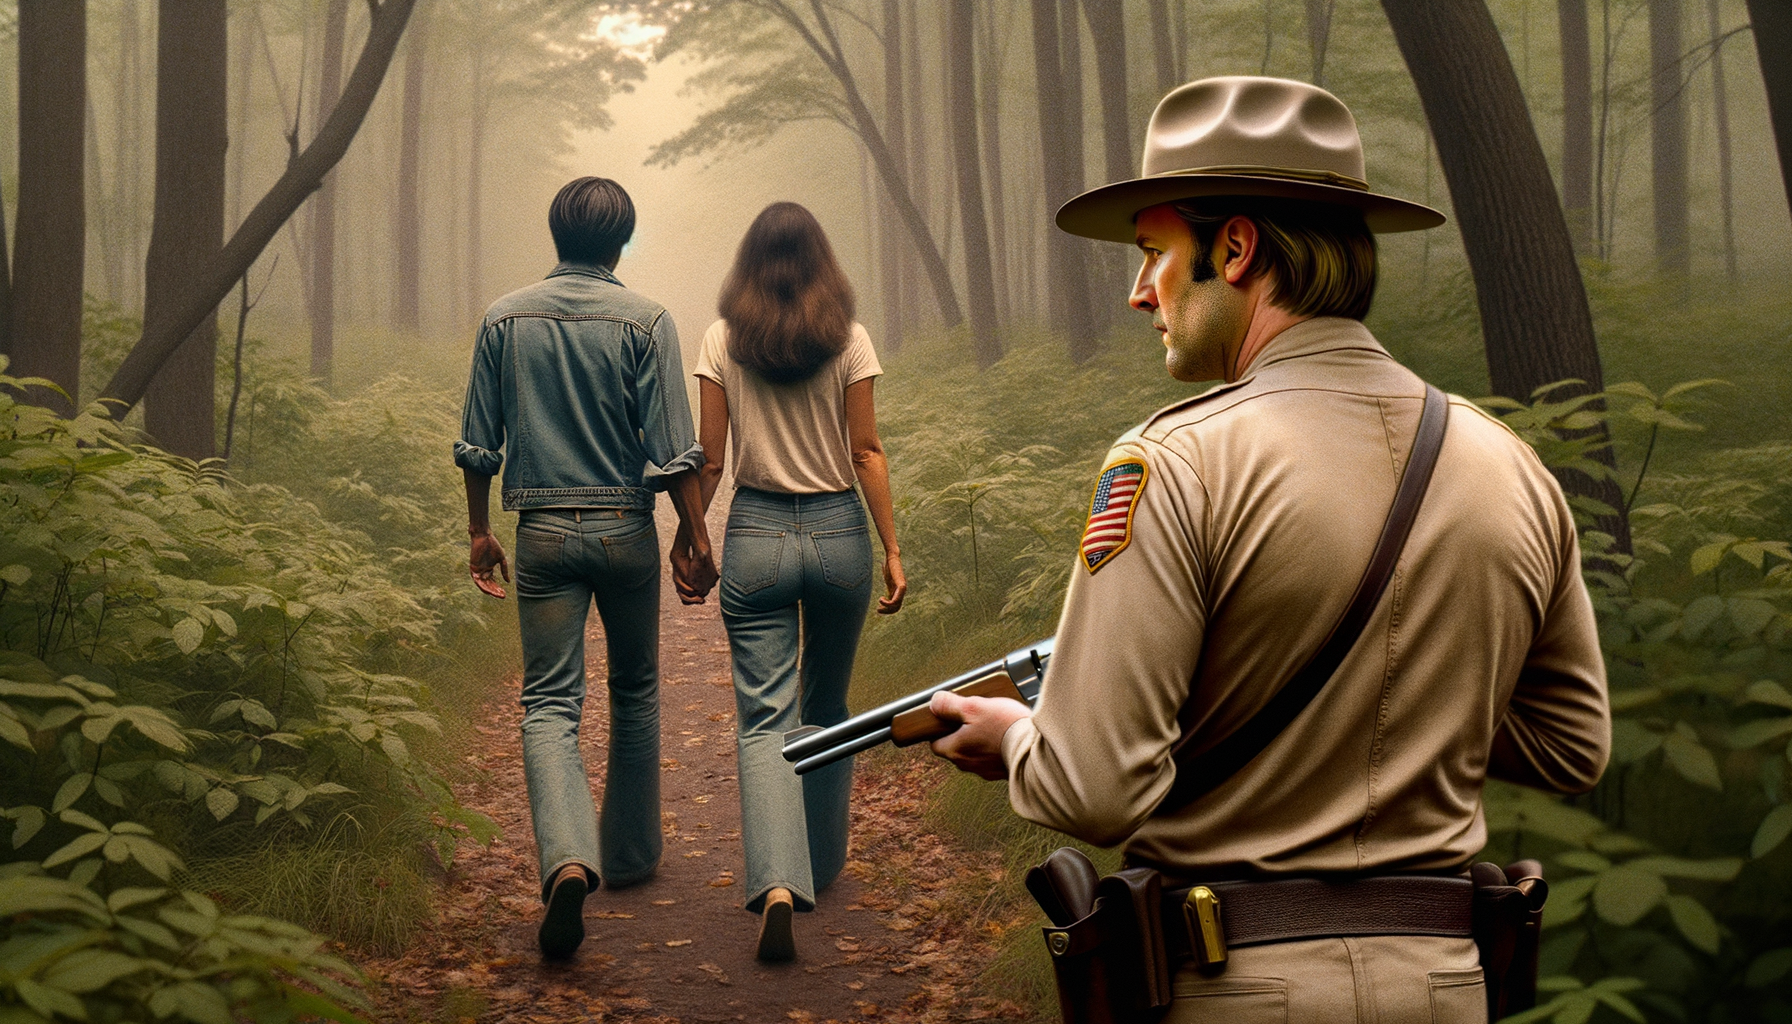 1976 год Заповедник Мак-Клинток, пара мужчина и женщина гуляют по тропинки в лесу, спиной к нам стоит американский мужчина с ружьем и наблюдает за ними